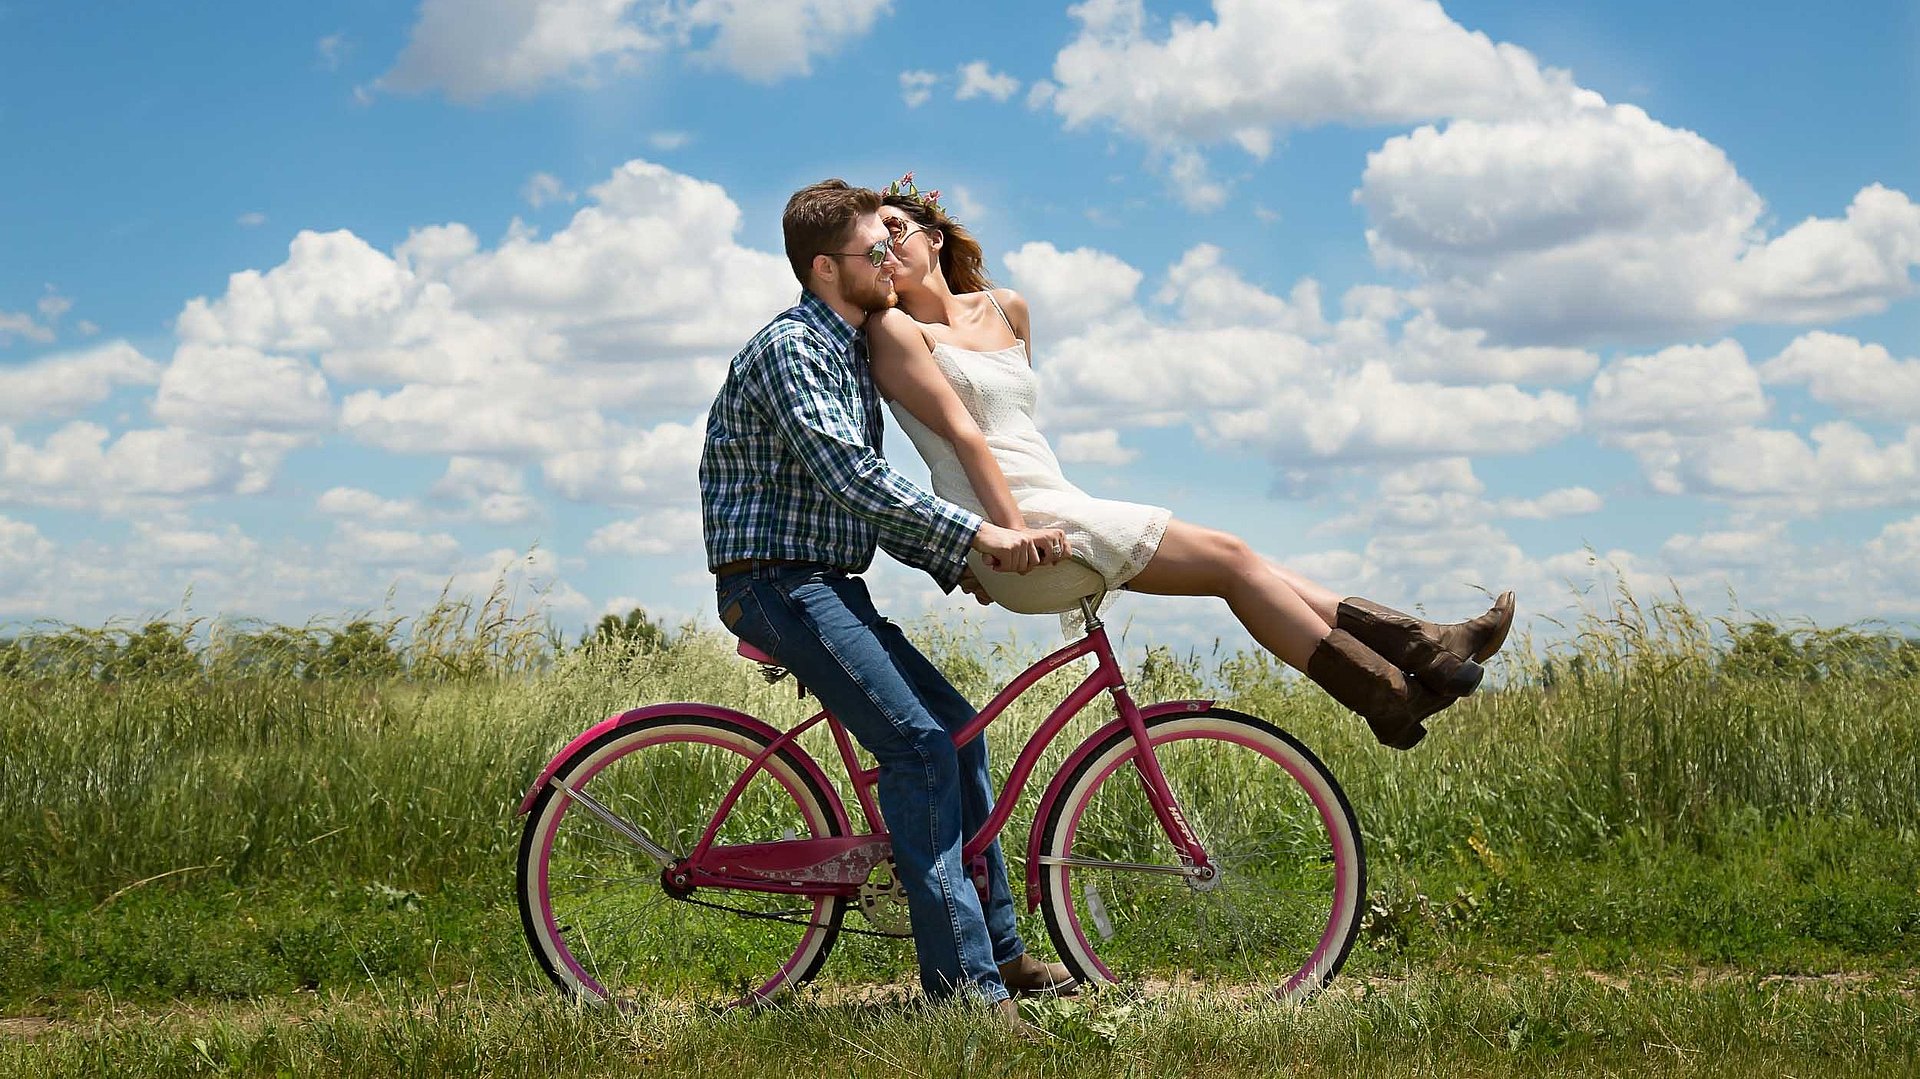 Radfahren und Radwandern in Oberbayern - junger Mann sitzt auf Fahrrad, seine Partnerin ist auf dem vorderen Gepäckträger und küsst ihn; sonniges Wetter auf einem Feld